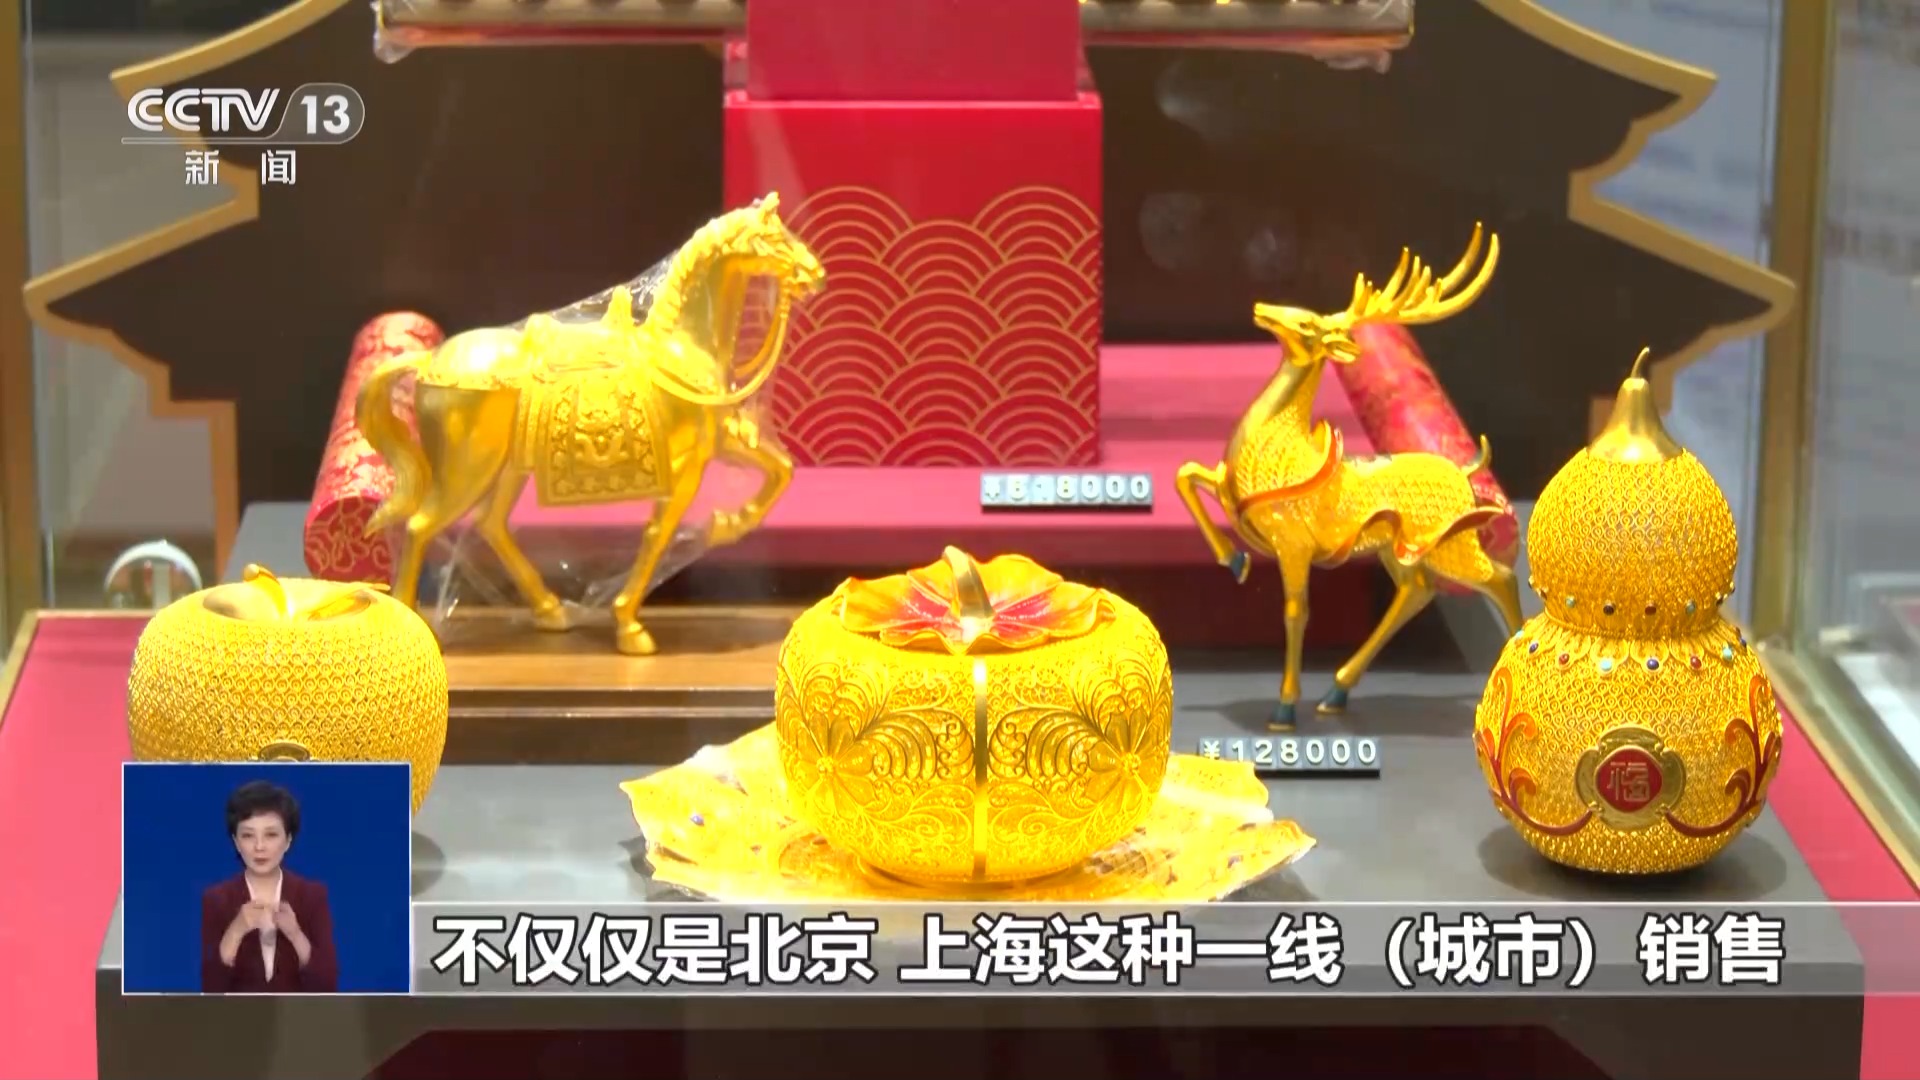 春节期间黄金消费火热 “龙元素”金饰受欢迎